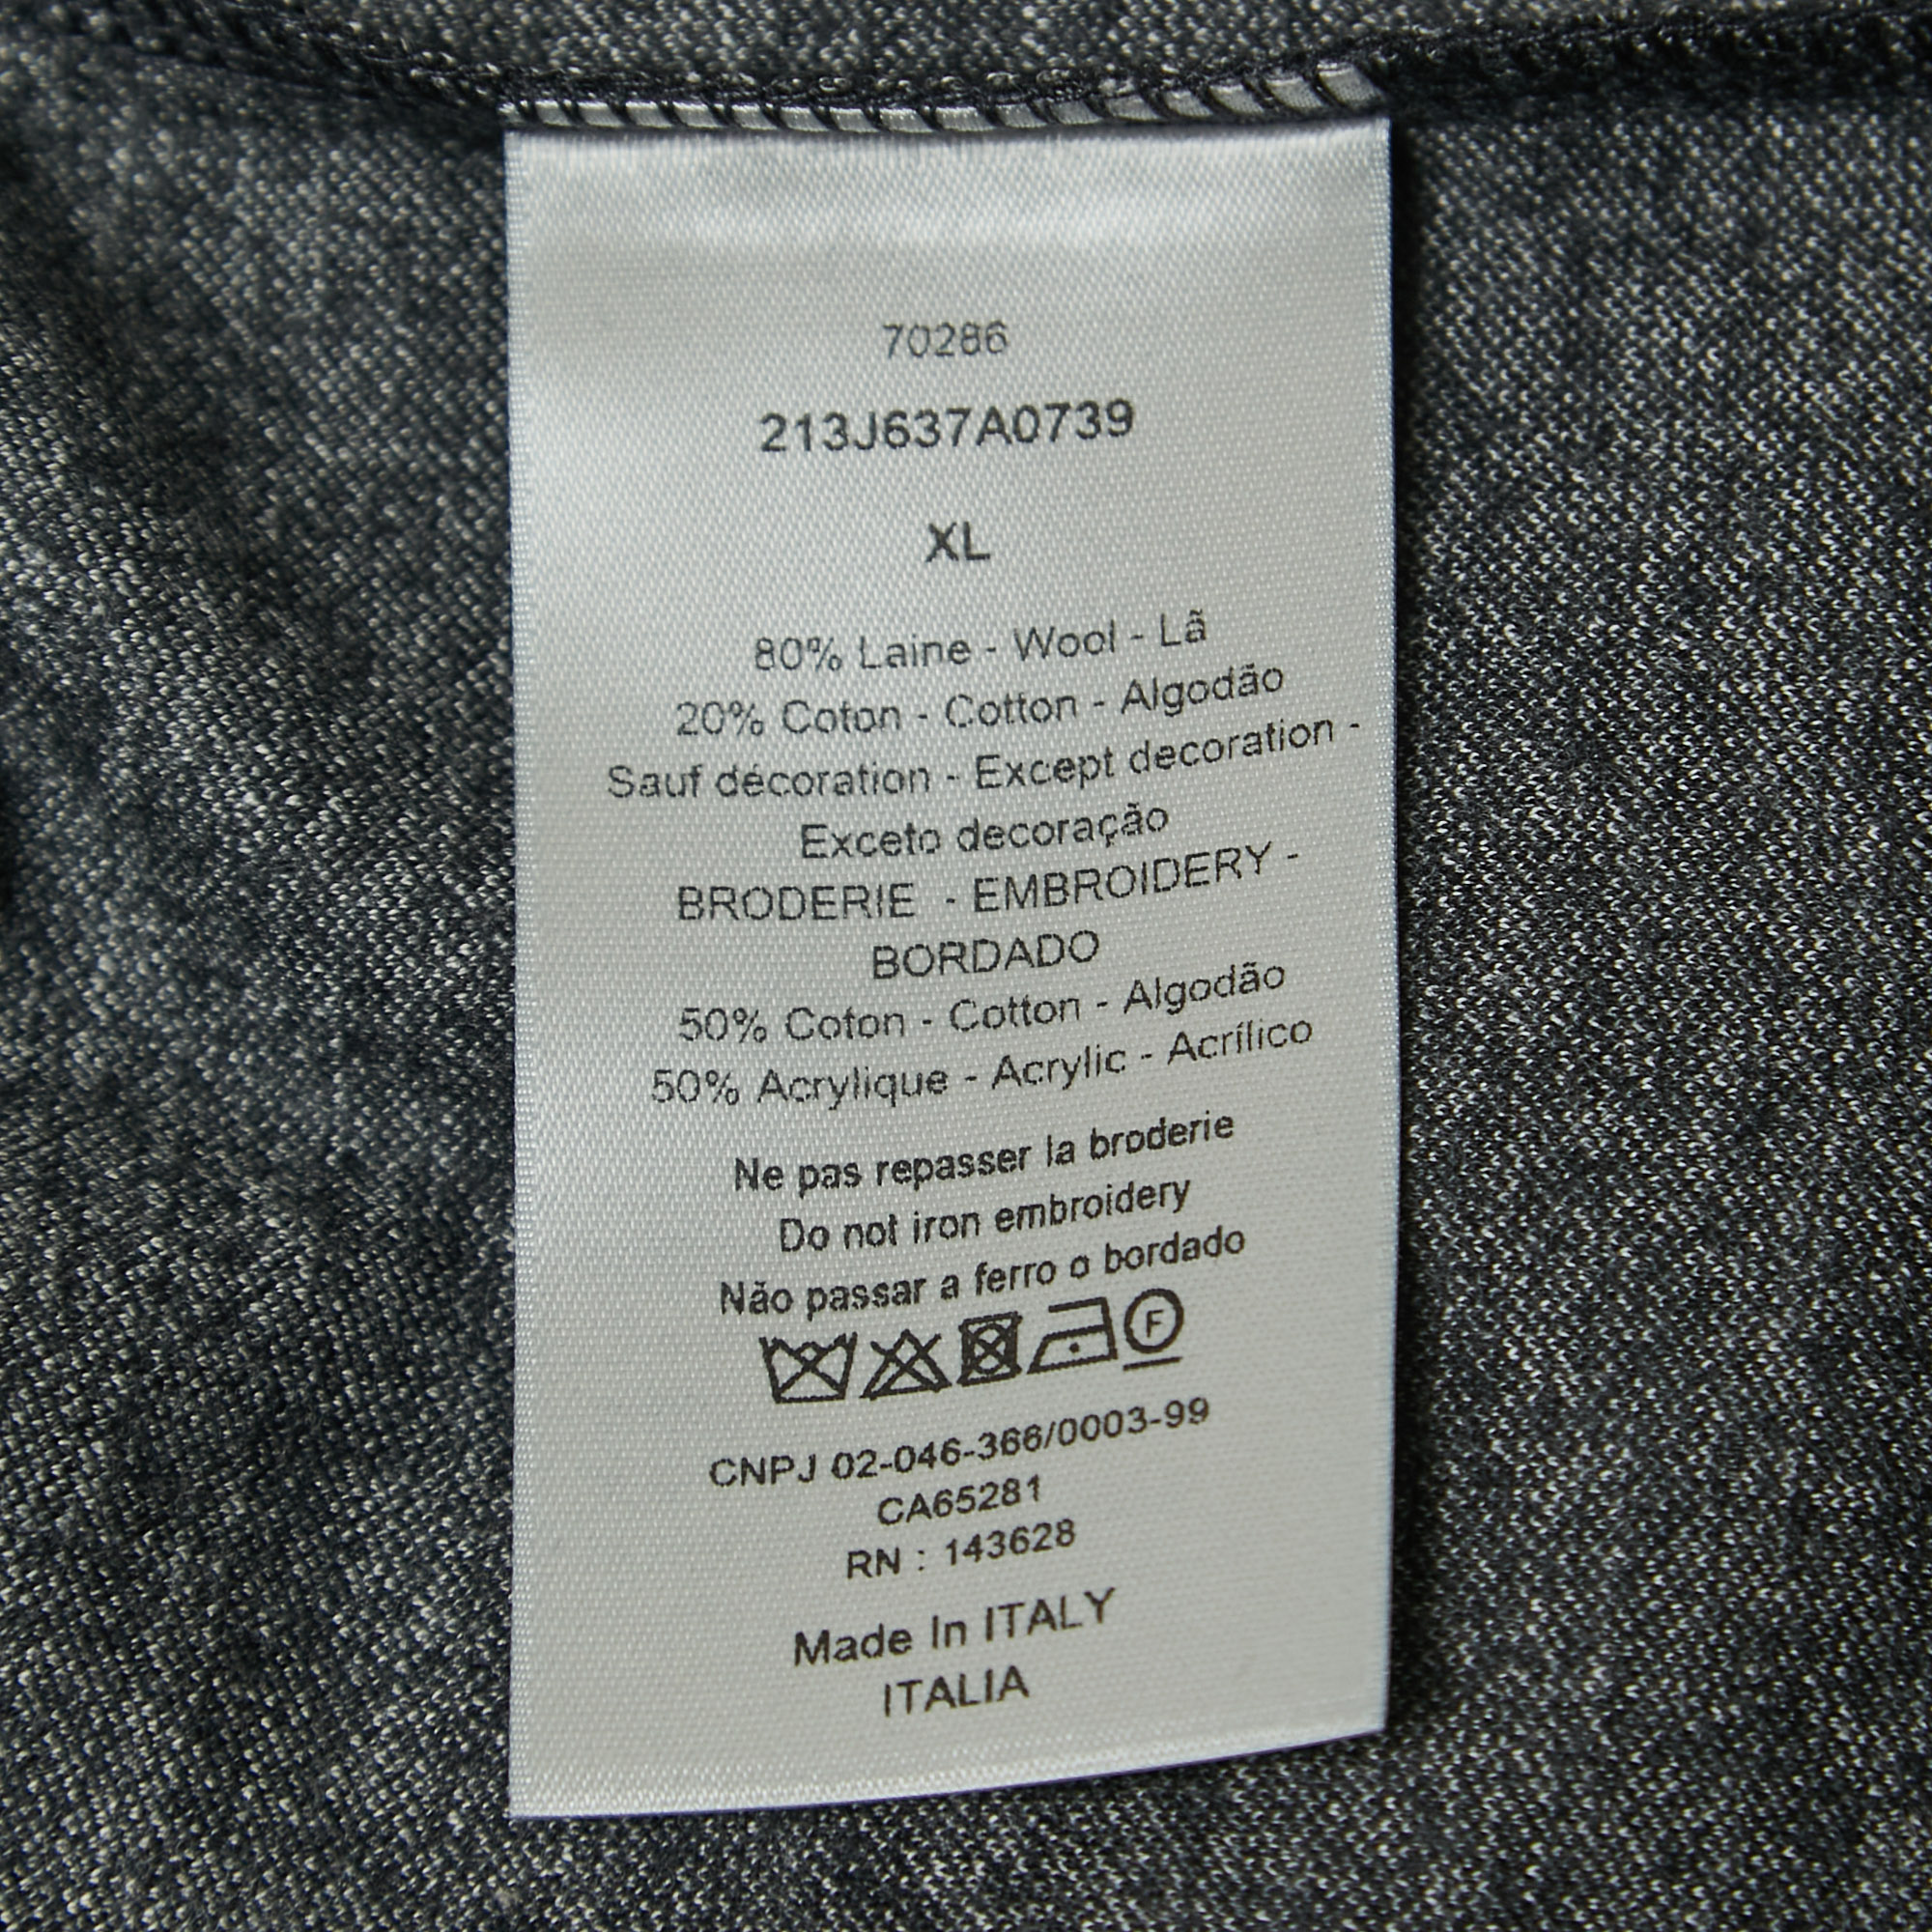 Dior Dark Grey Striped Embroidered Wool Crew Neck T-Shirt XL